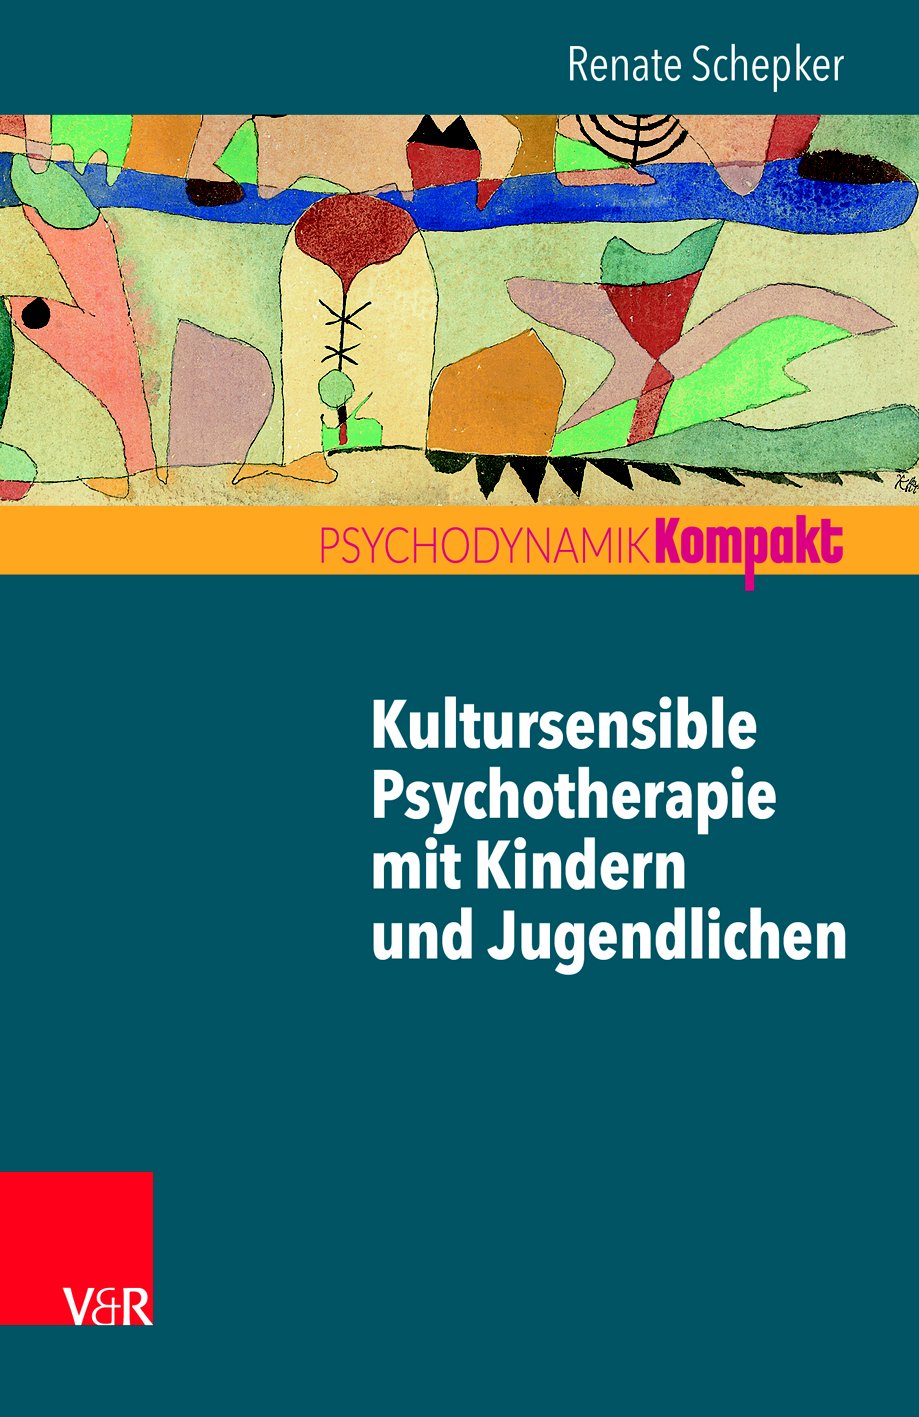 Kultursensible Psychotherapie mit Kindern und Jugendlichen